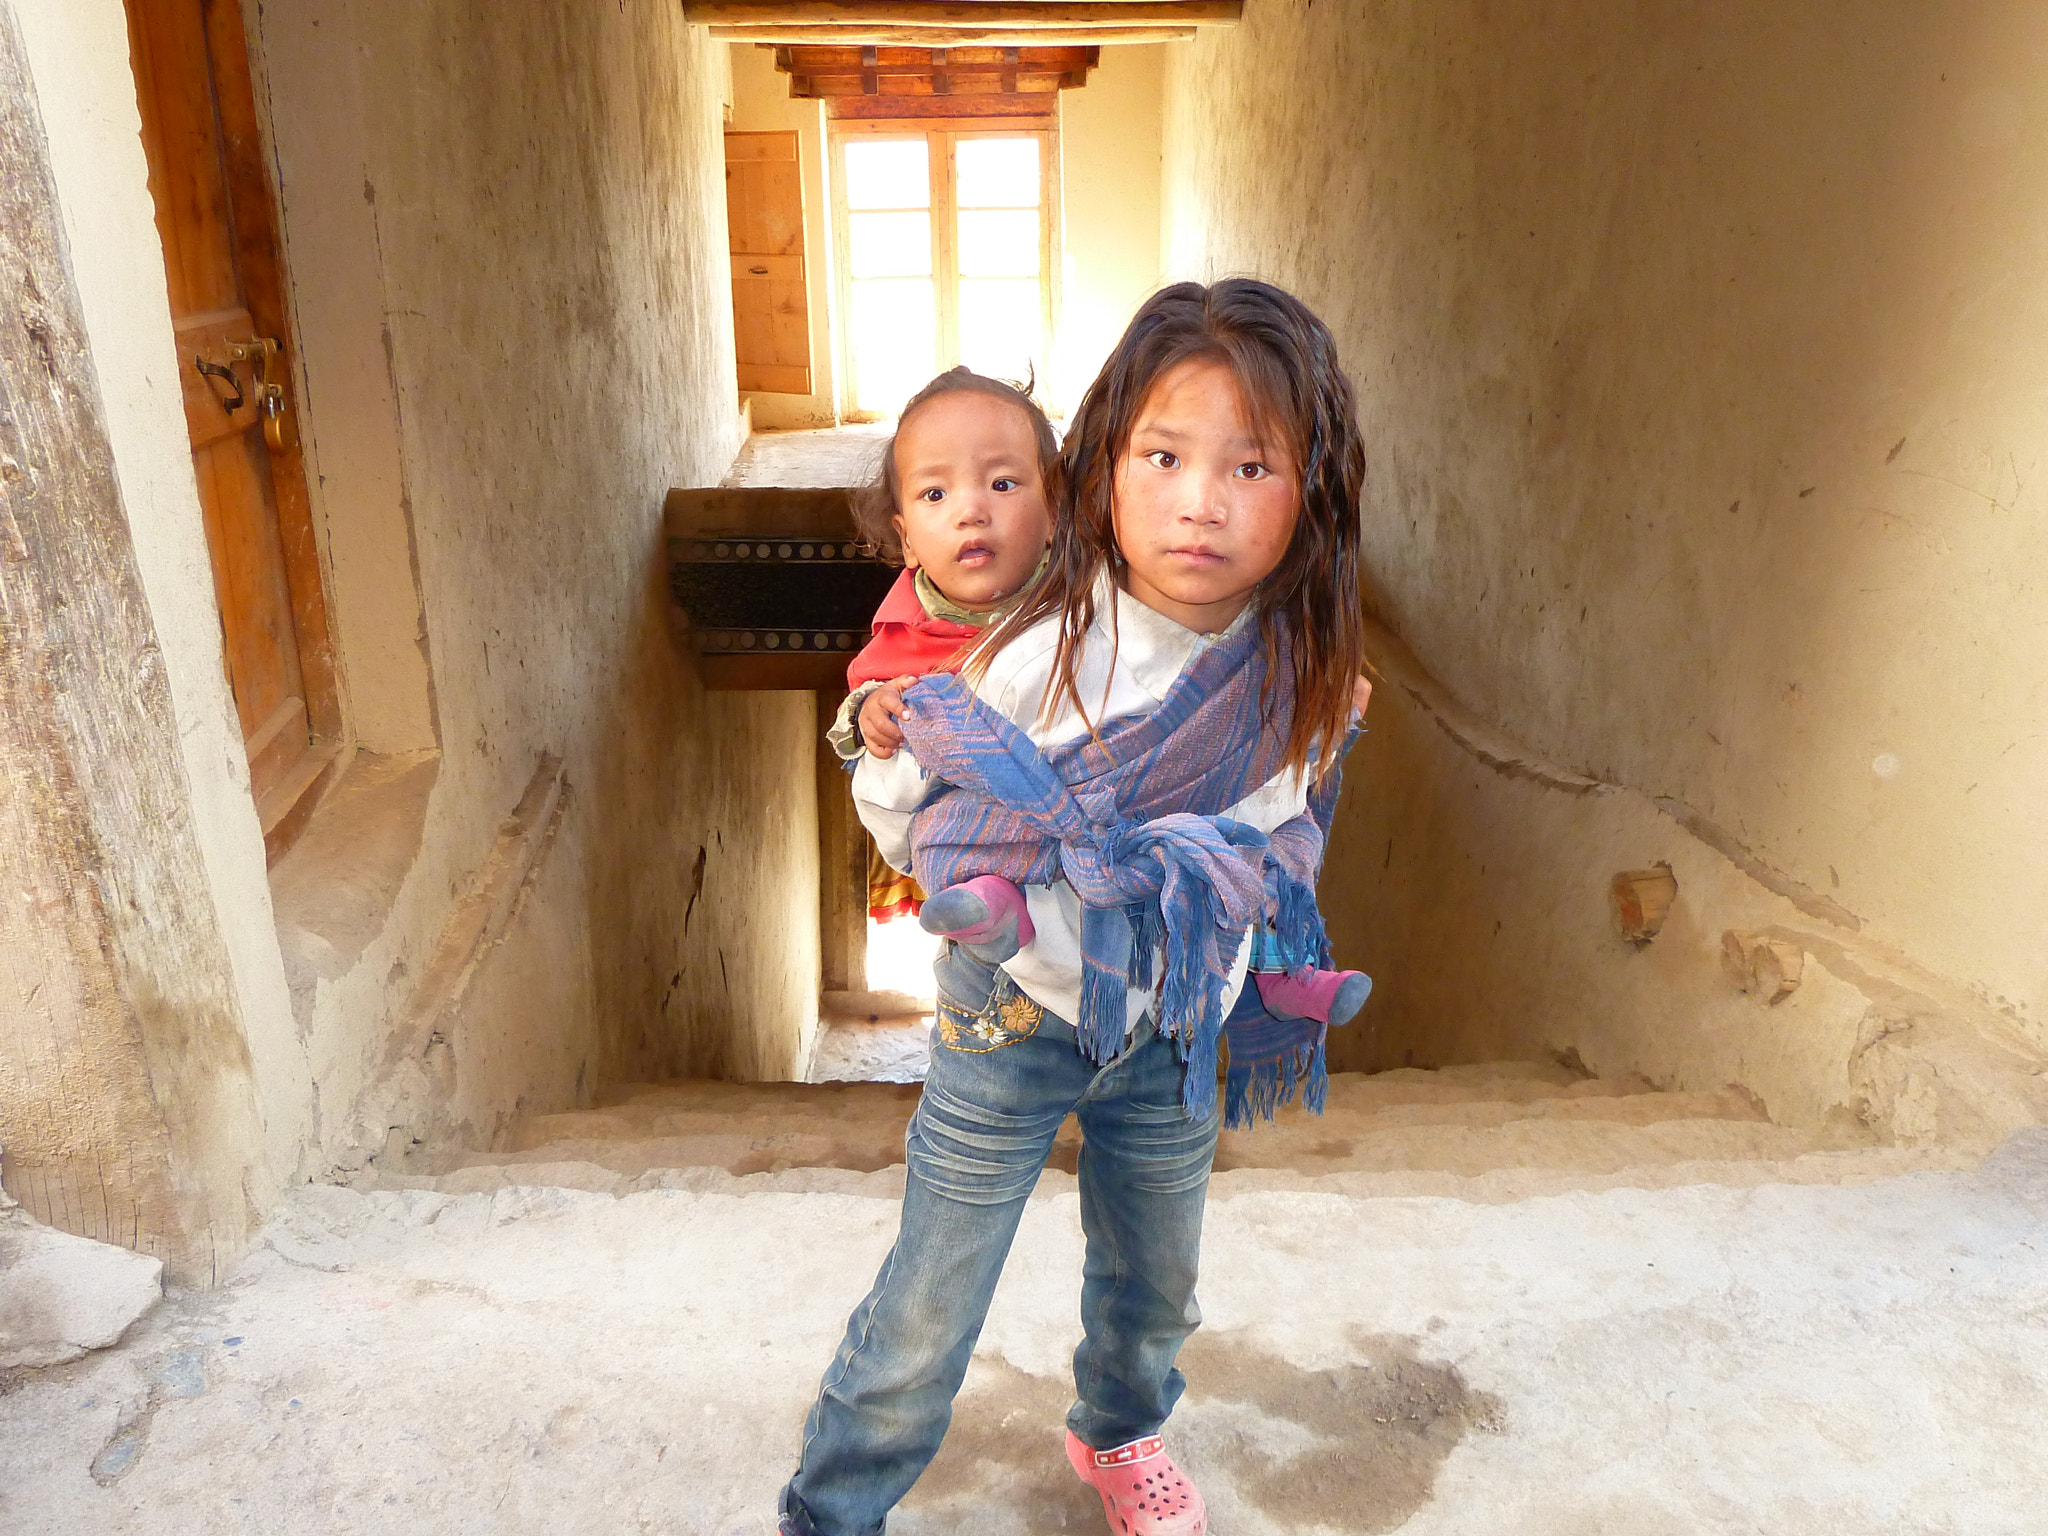 Panasonic Lumix DMC-ZS7 (Lumix DMC-TZ10) sample photo. Tibet young girl and sister photography